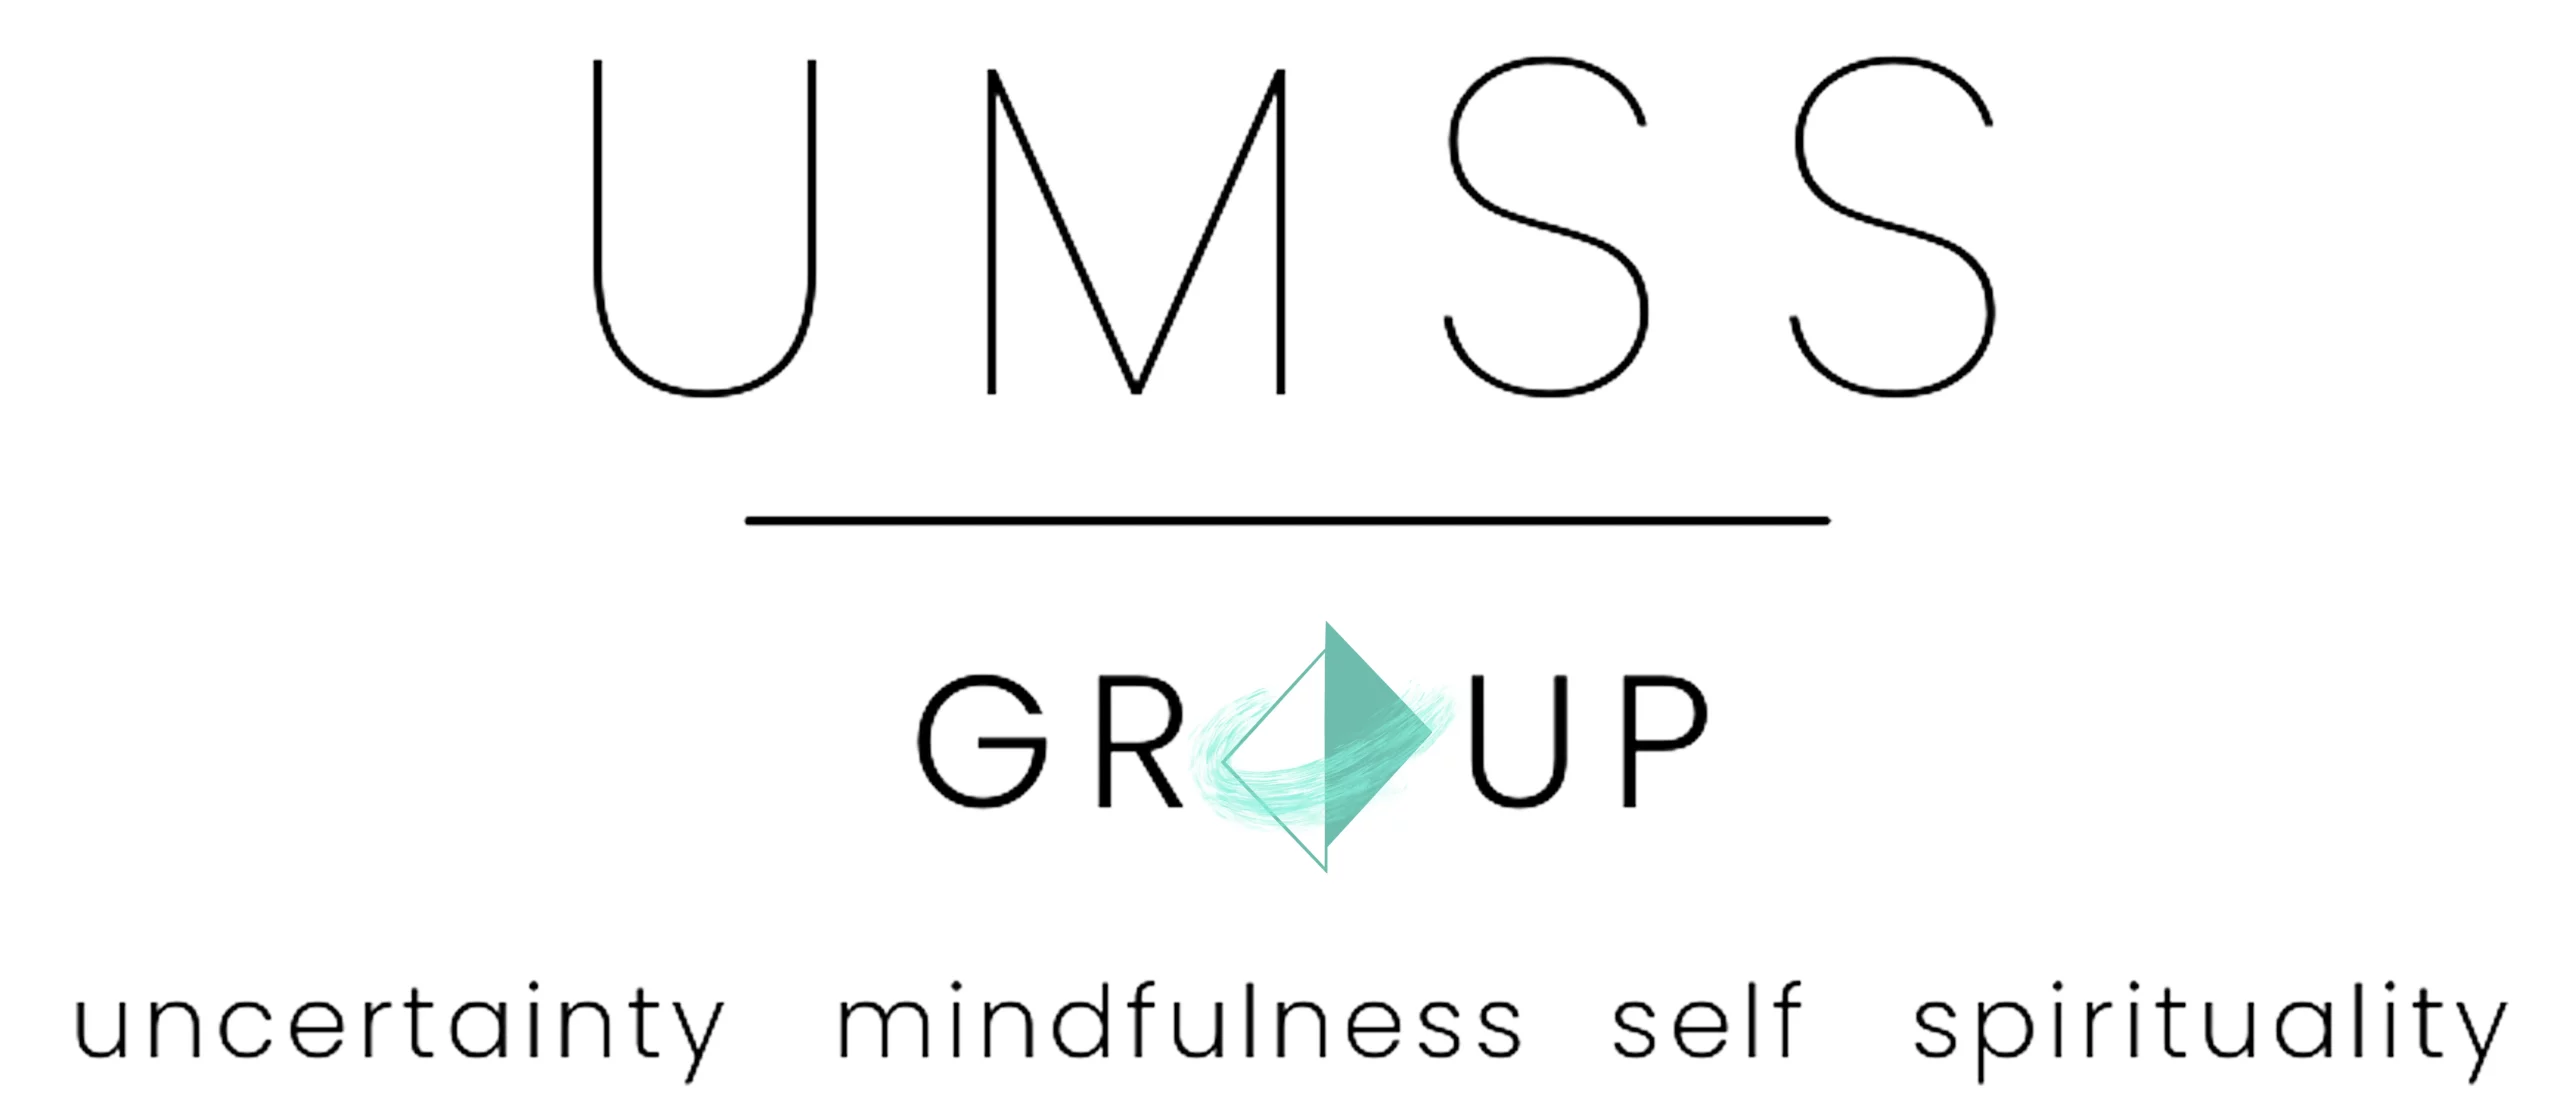 UMSS Group